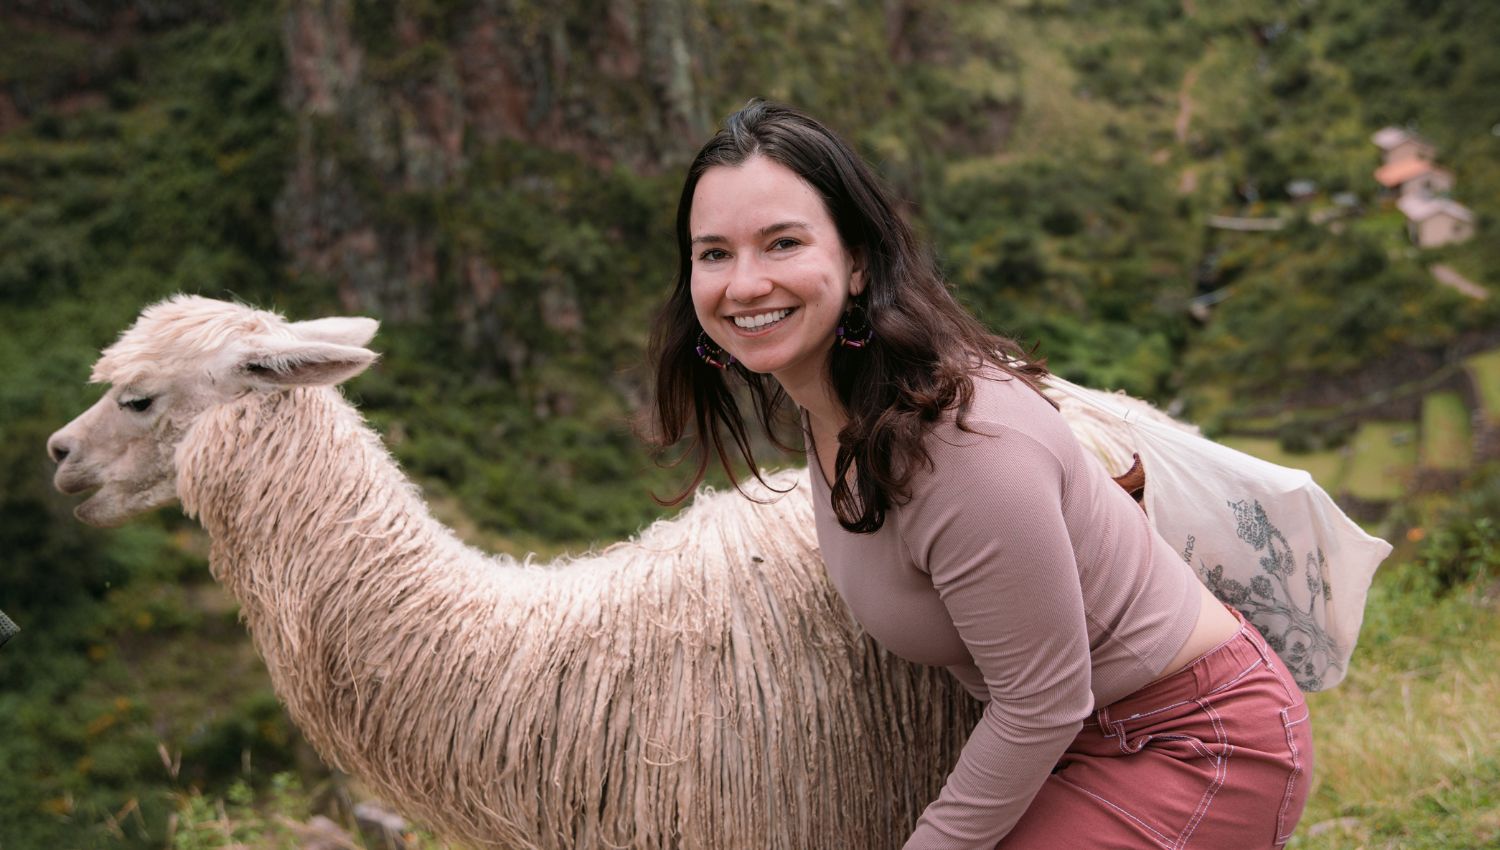 Female tourist with a llama